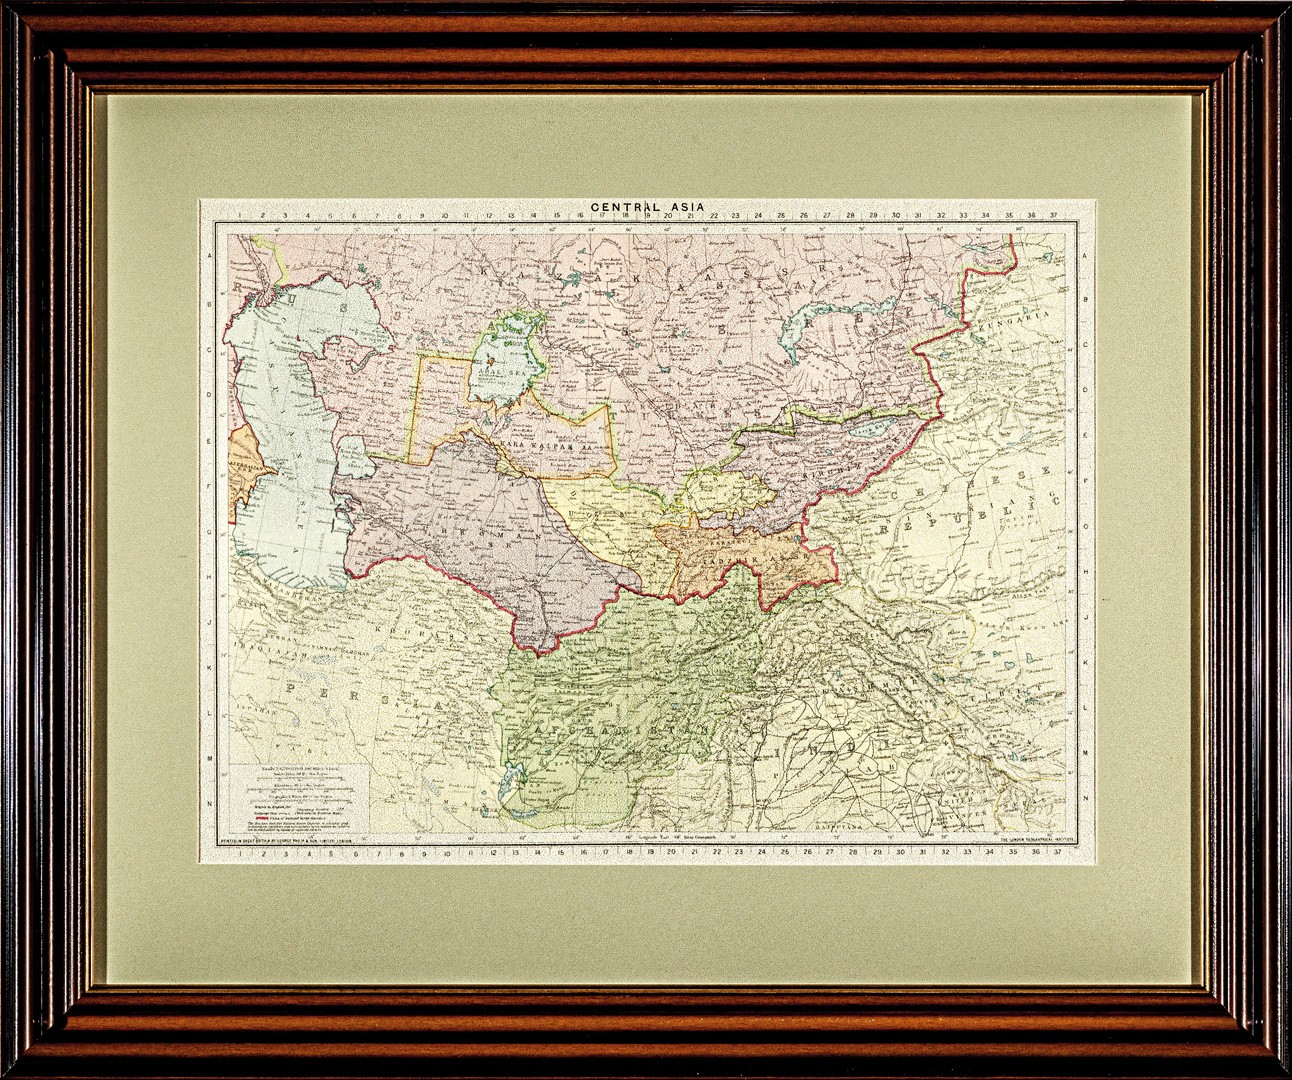 Купить карту Джорджа (Карта Центральной Азии)